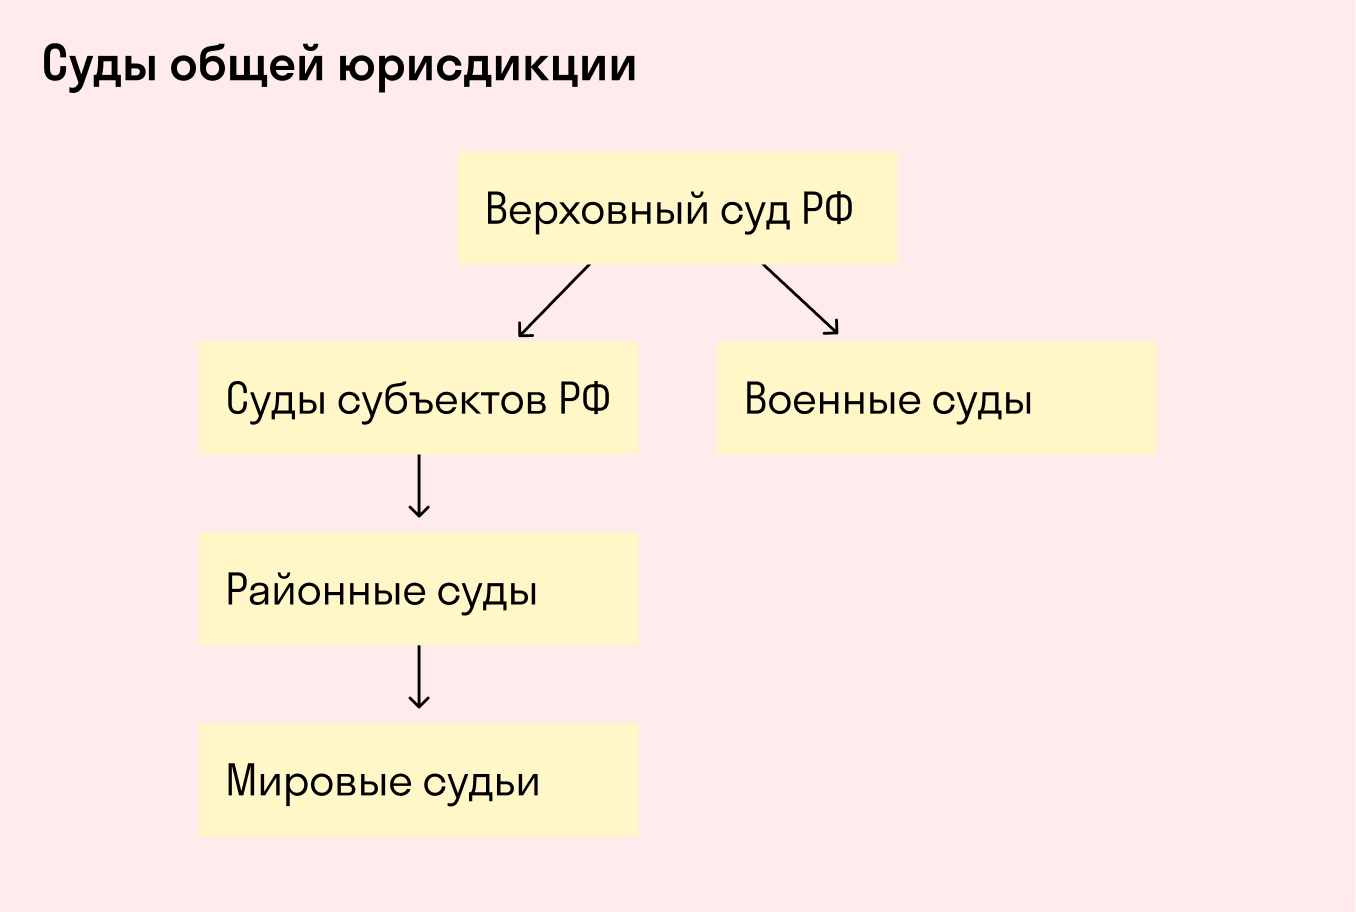 Иерархия судов общей юрисдикции РФ